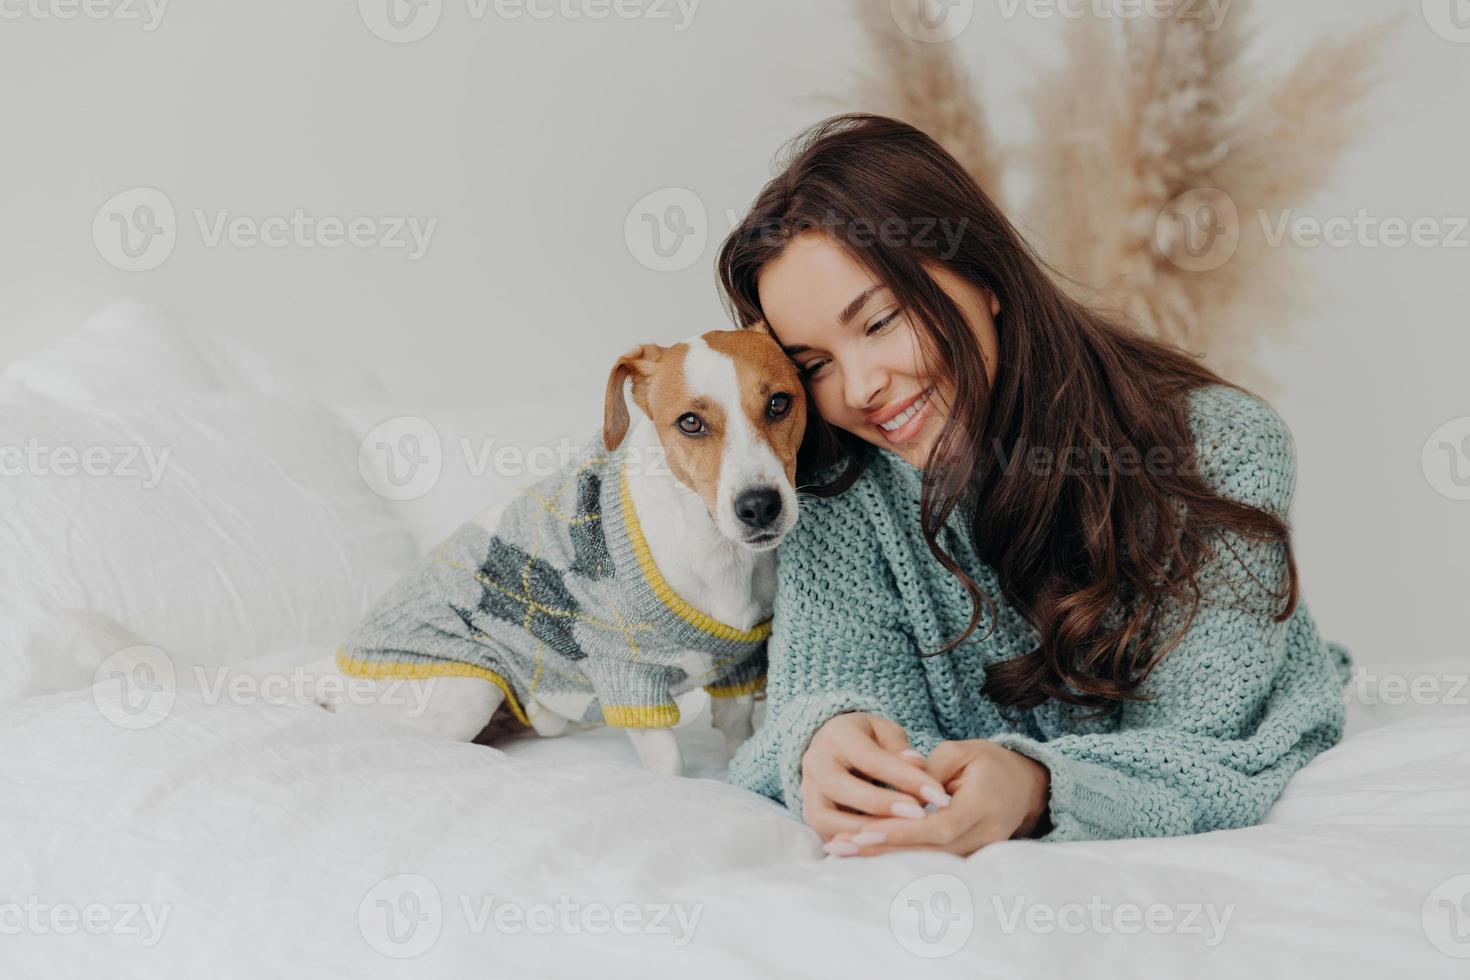 foto de una hermosa morena con suéter de punto yace junto con un perro en una cama blanda, disfruta pasar tiempo con su mascota favorita, se preocupa por los animales, se queda en casa durante la cuarentena del coronavirus